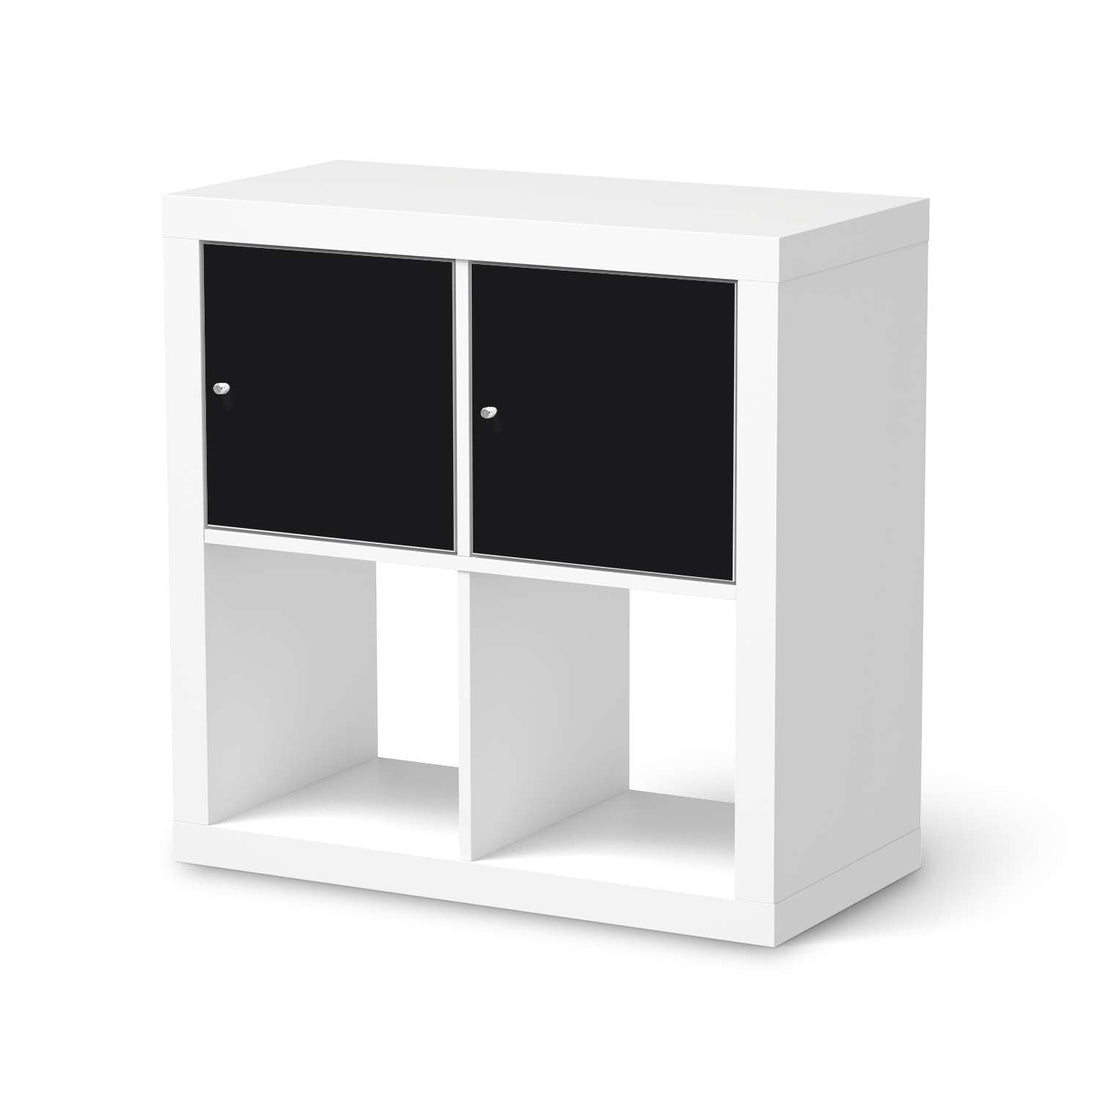 Möbel Klebefolie Schwarz - IKEA Expedit Regal 2 Türen Quer  - weiss